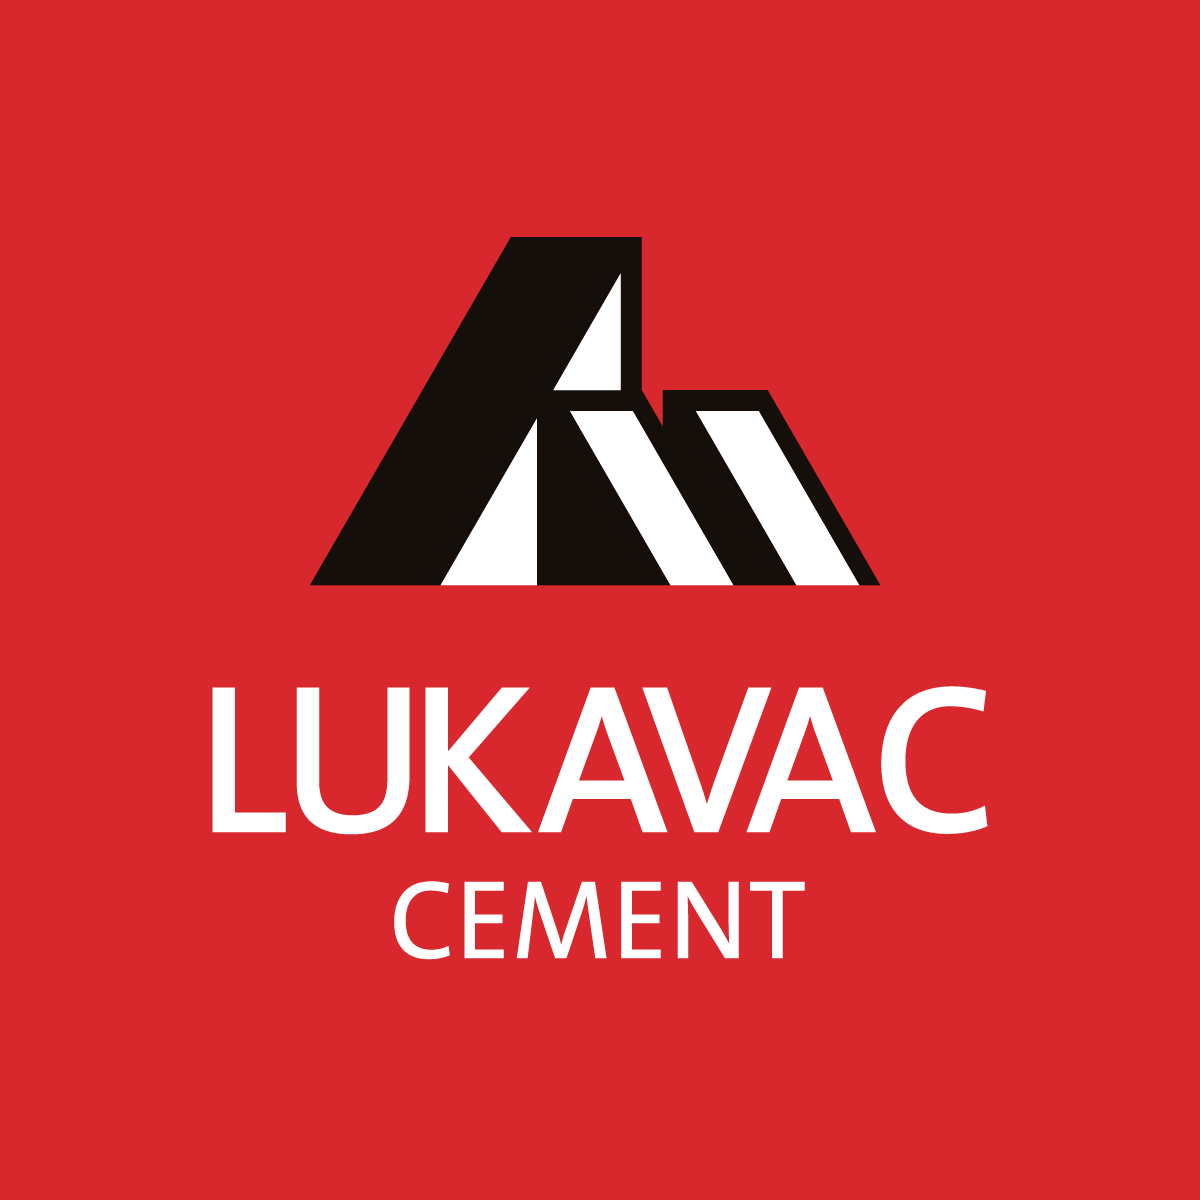 Siddik_gradjevinski_materijali_cement_lukavac